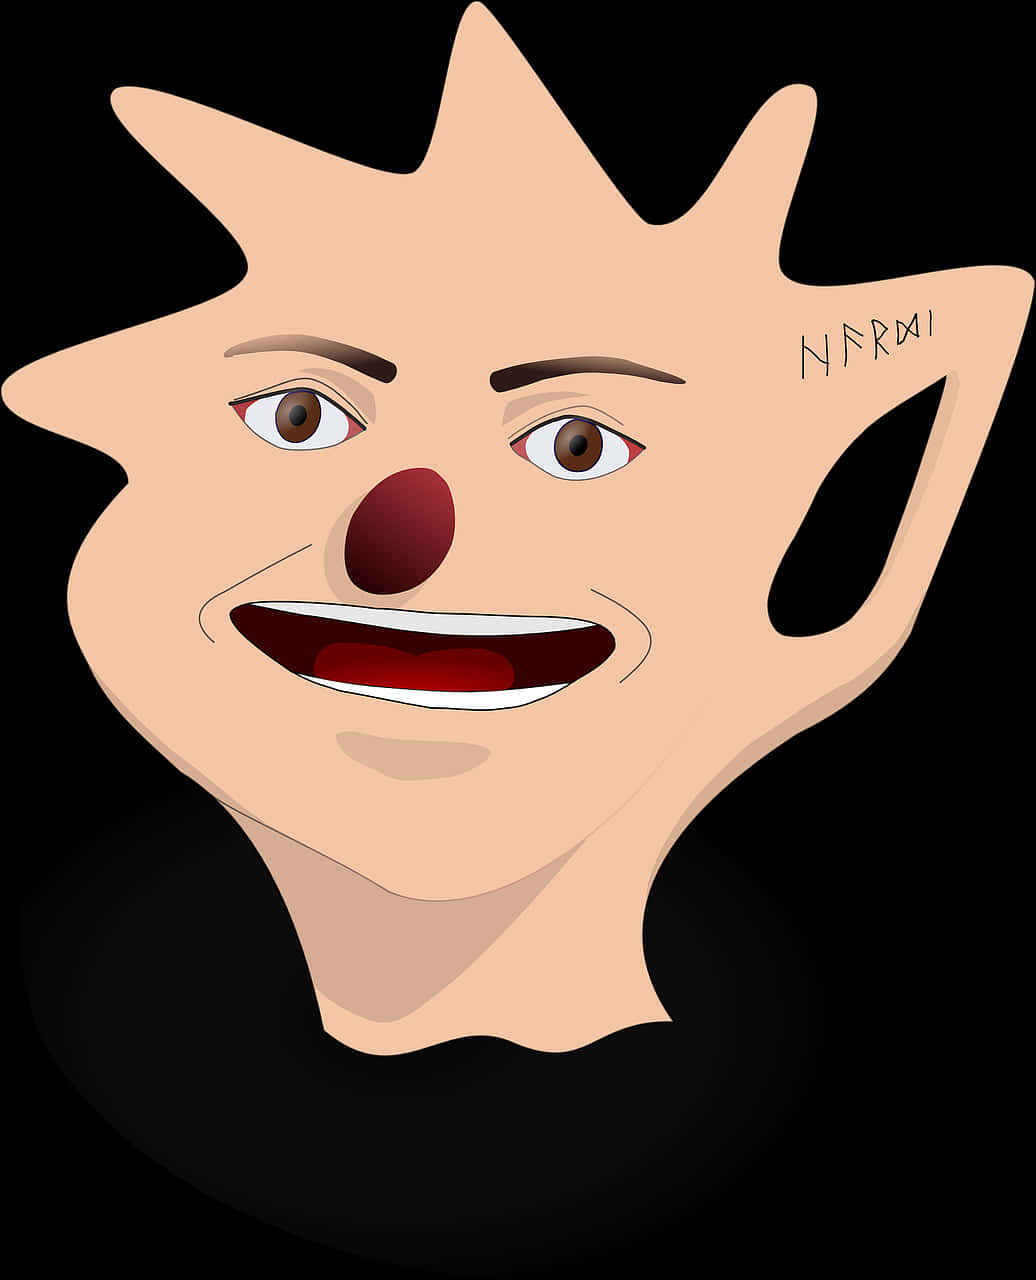 Abstract Clown Face Art.jpg